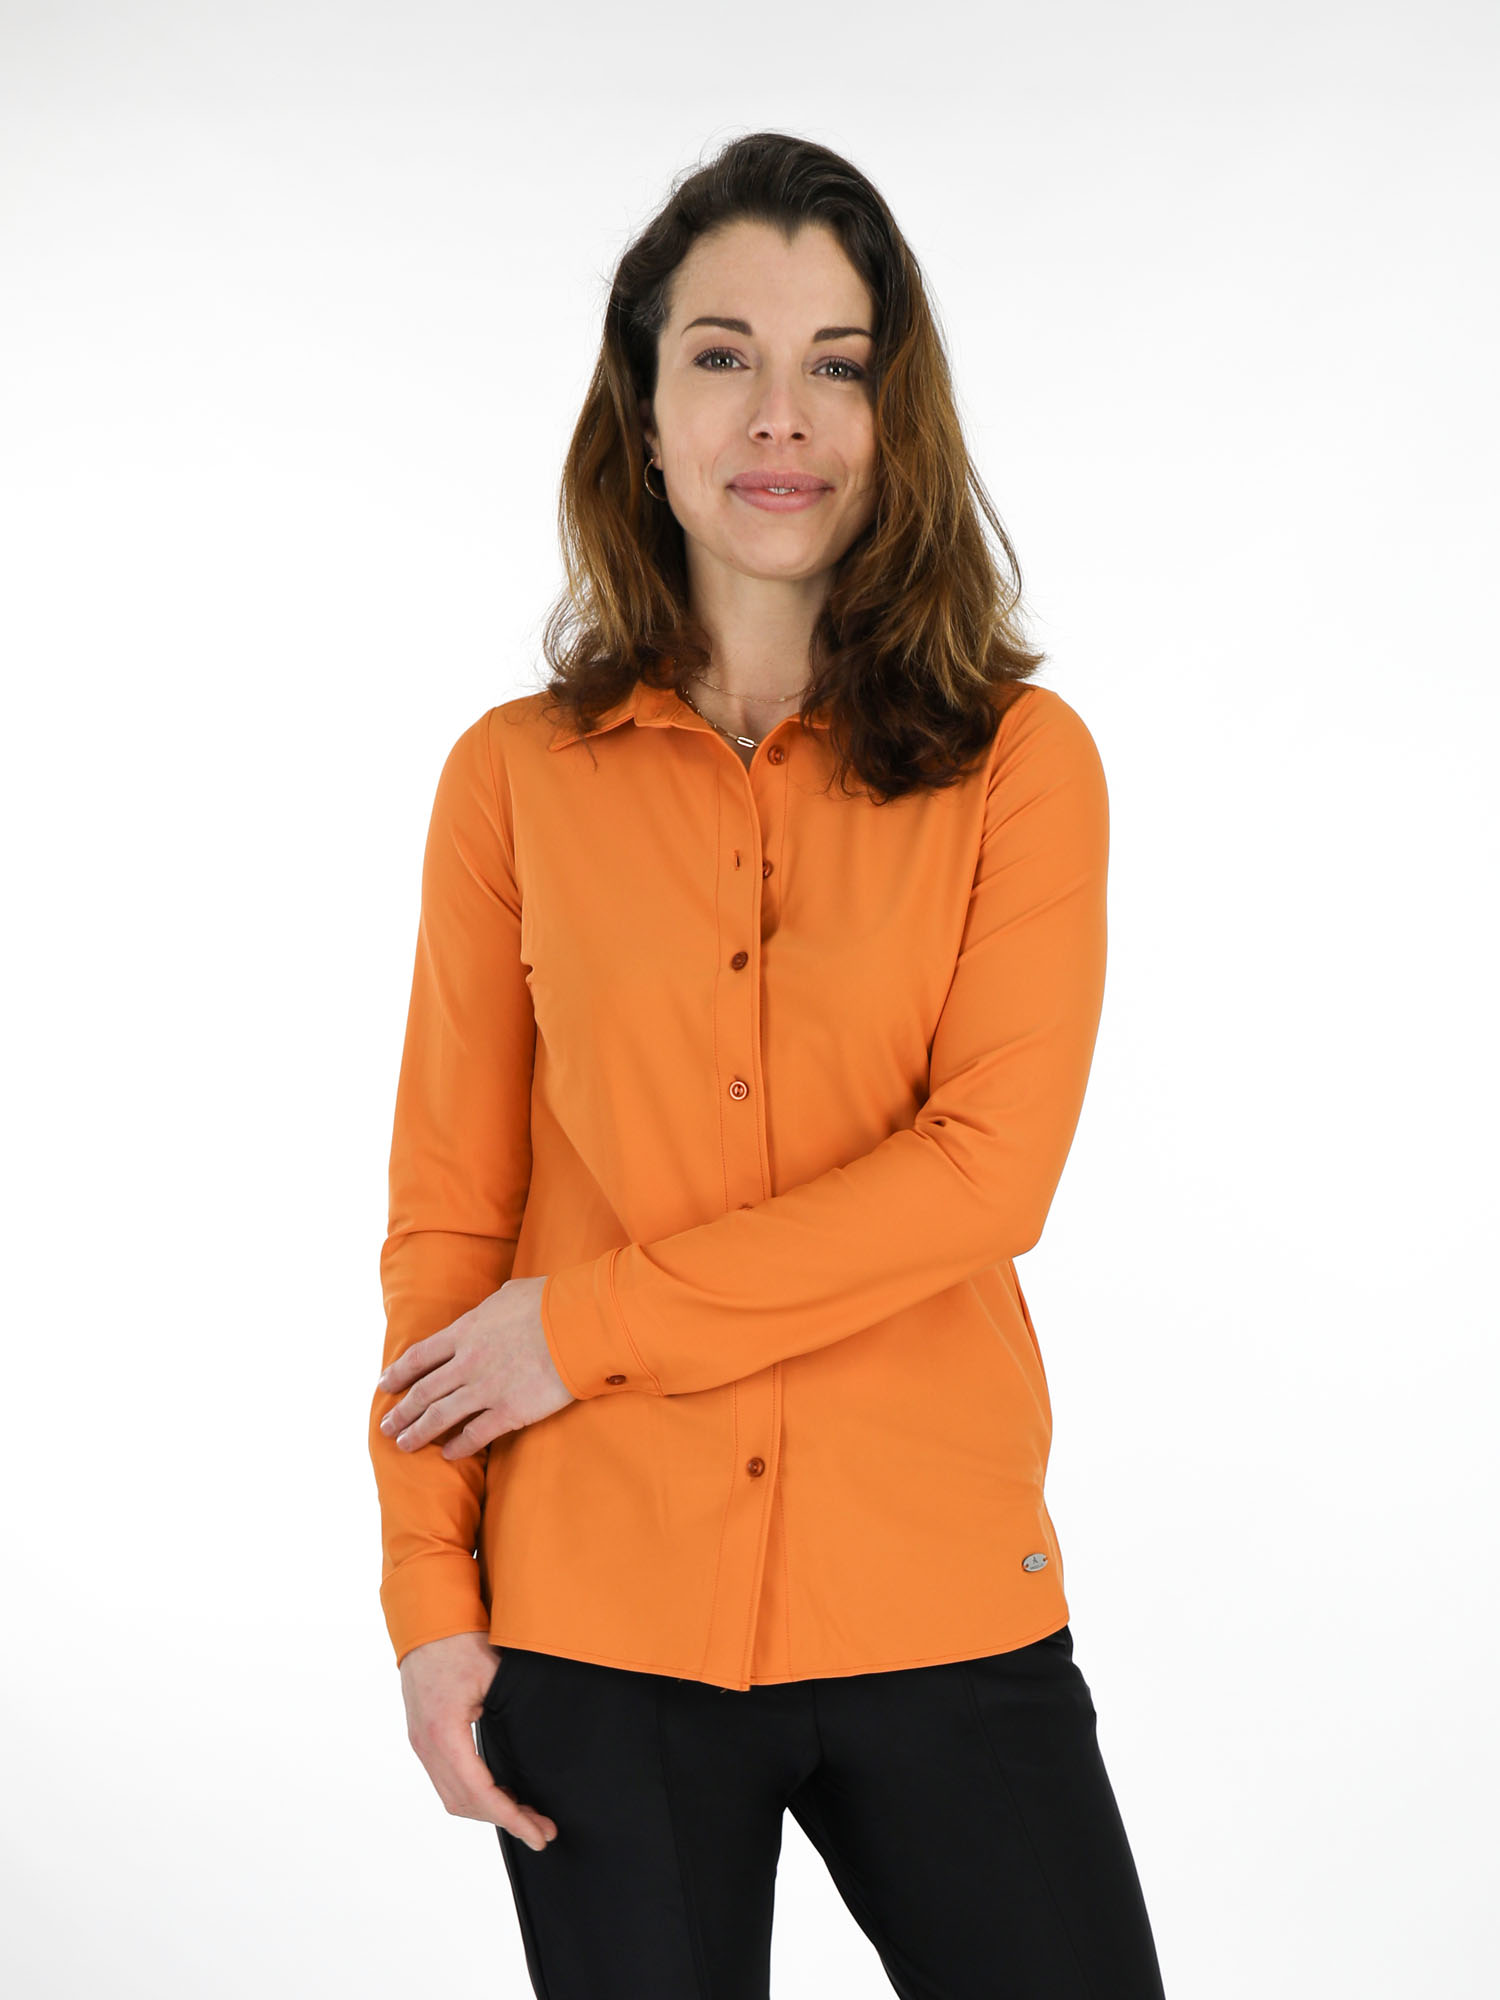 Phalanx zebra Smeren Oranje travelstof blouse van Angelle Milan 4445 exclusive